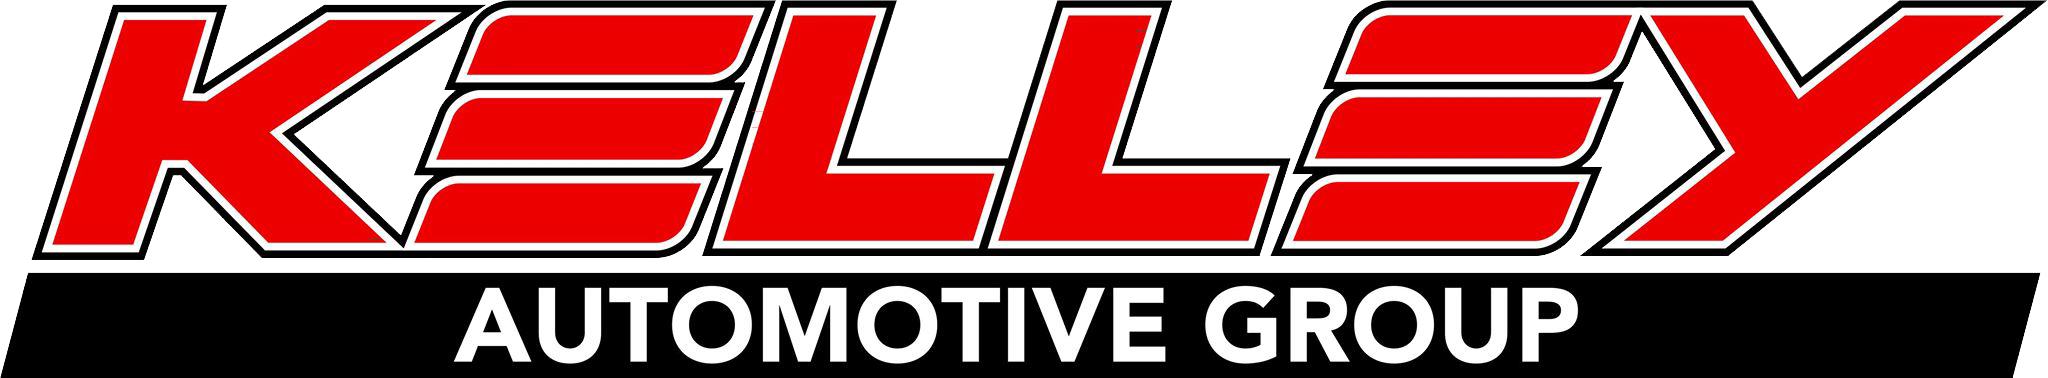 Kelley Automotive Group Logo